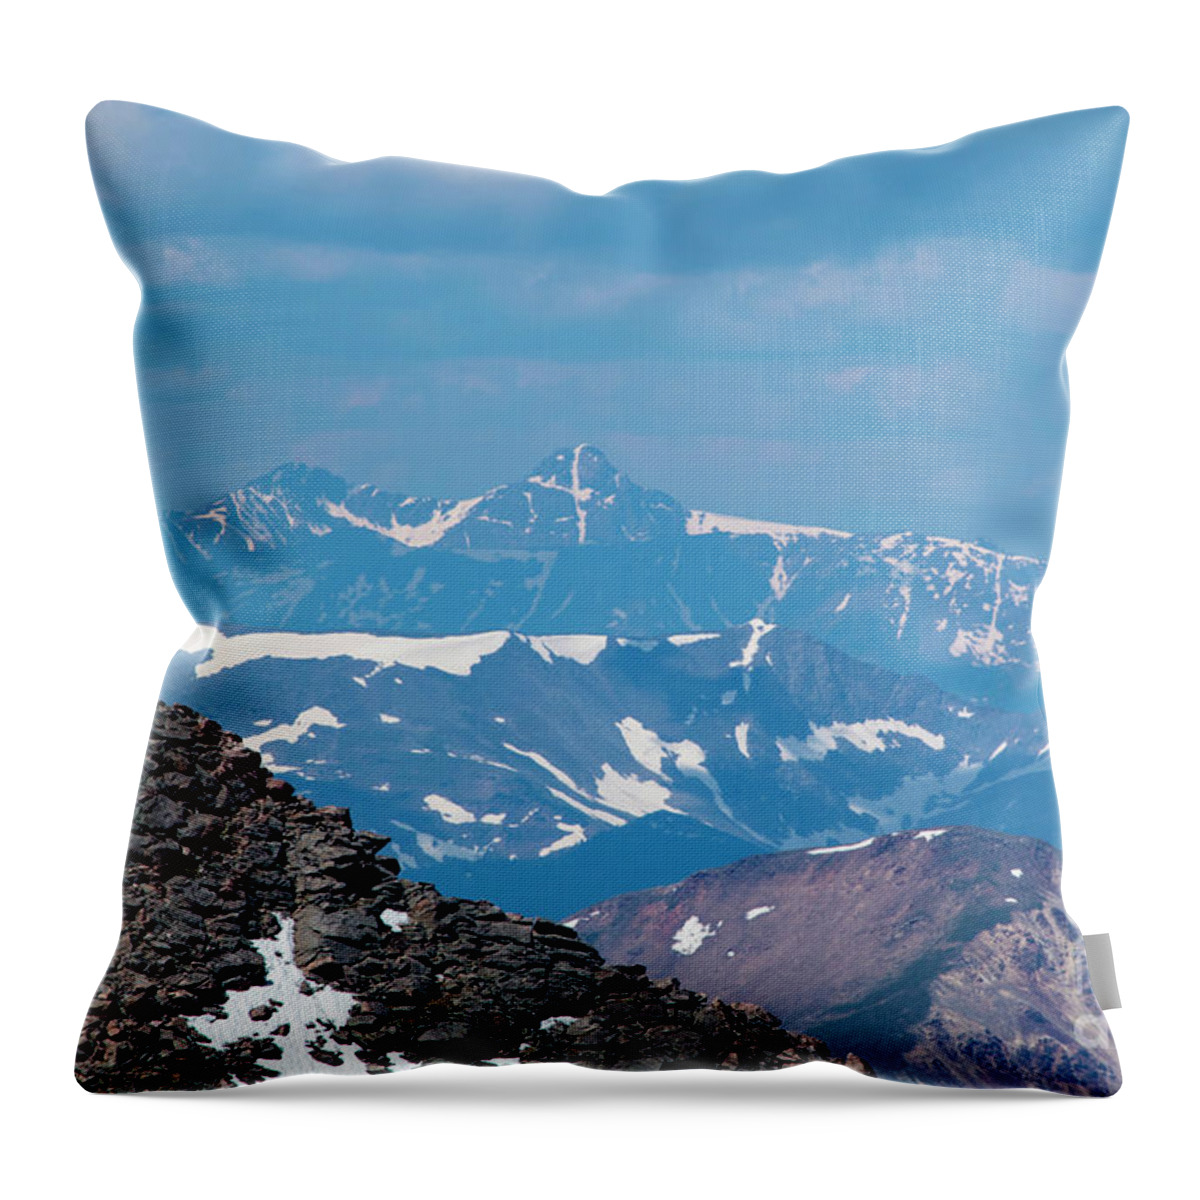 Mount Bierstadt Throw Pillow featuring the photograph Mount Holy Cross by Steven Krull